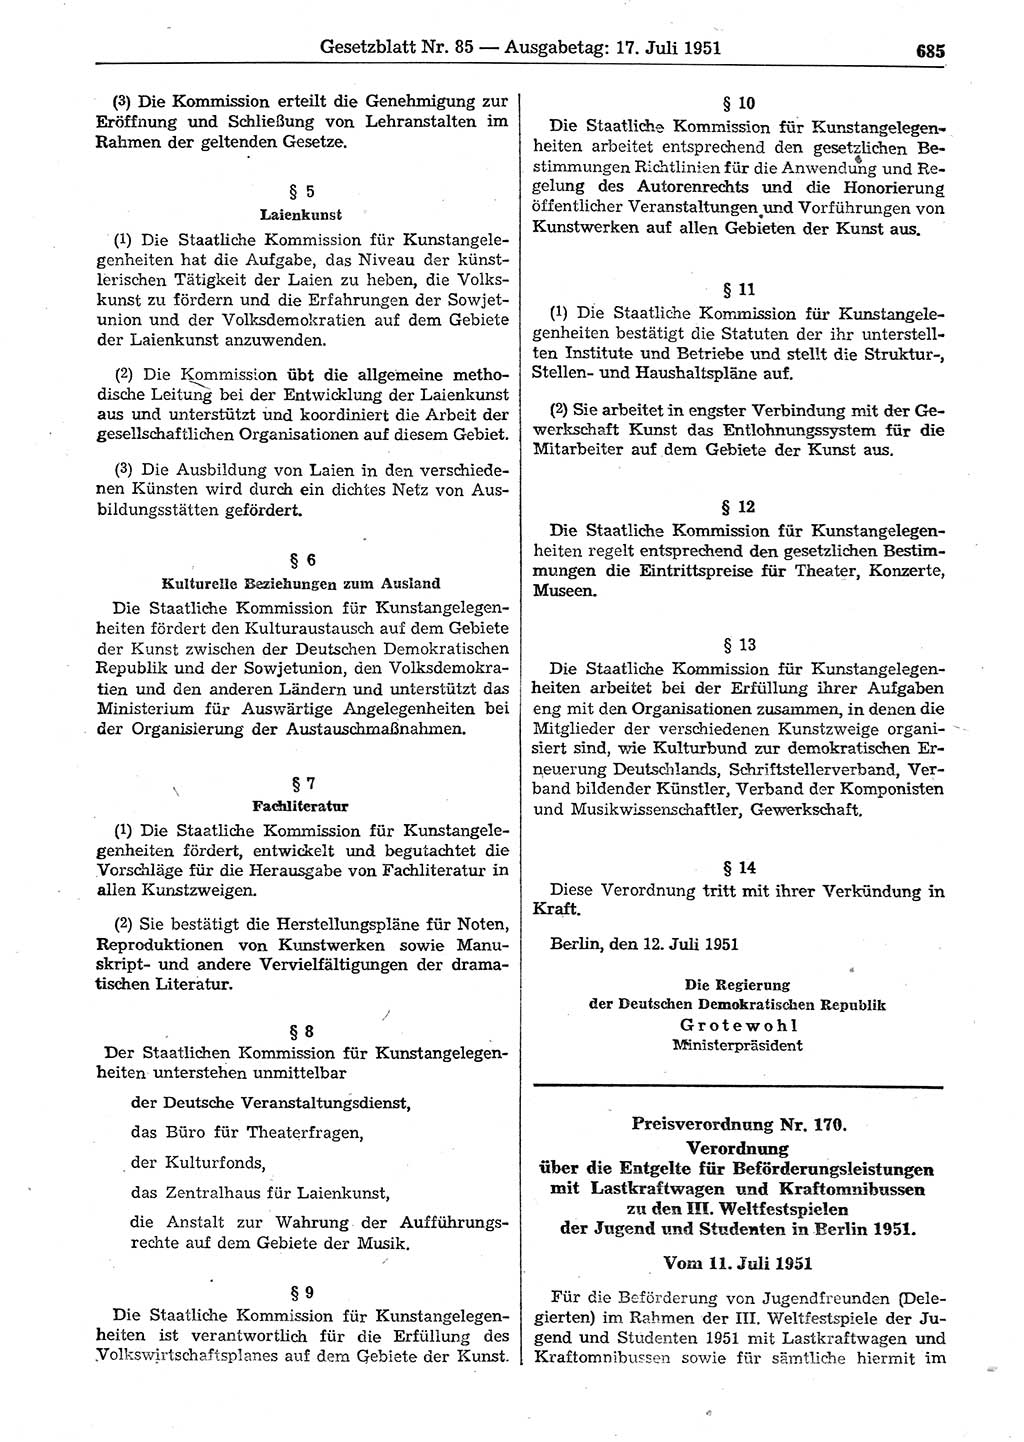 Gesetzblatt (GBl.) der Deutschen Demokratischen Republik (DDR) 1951, Seite 685 (GBl. DDR 1951, S. 685)